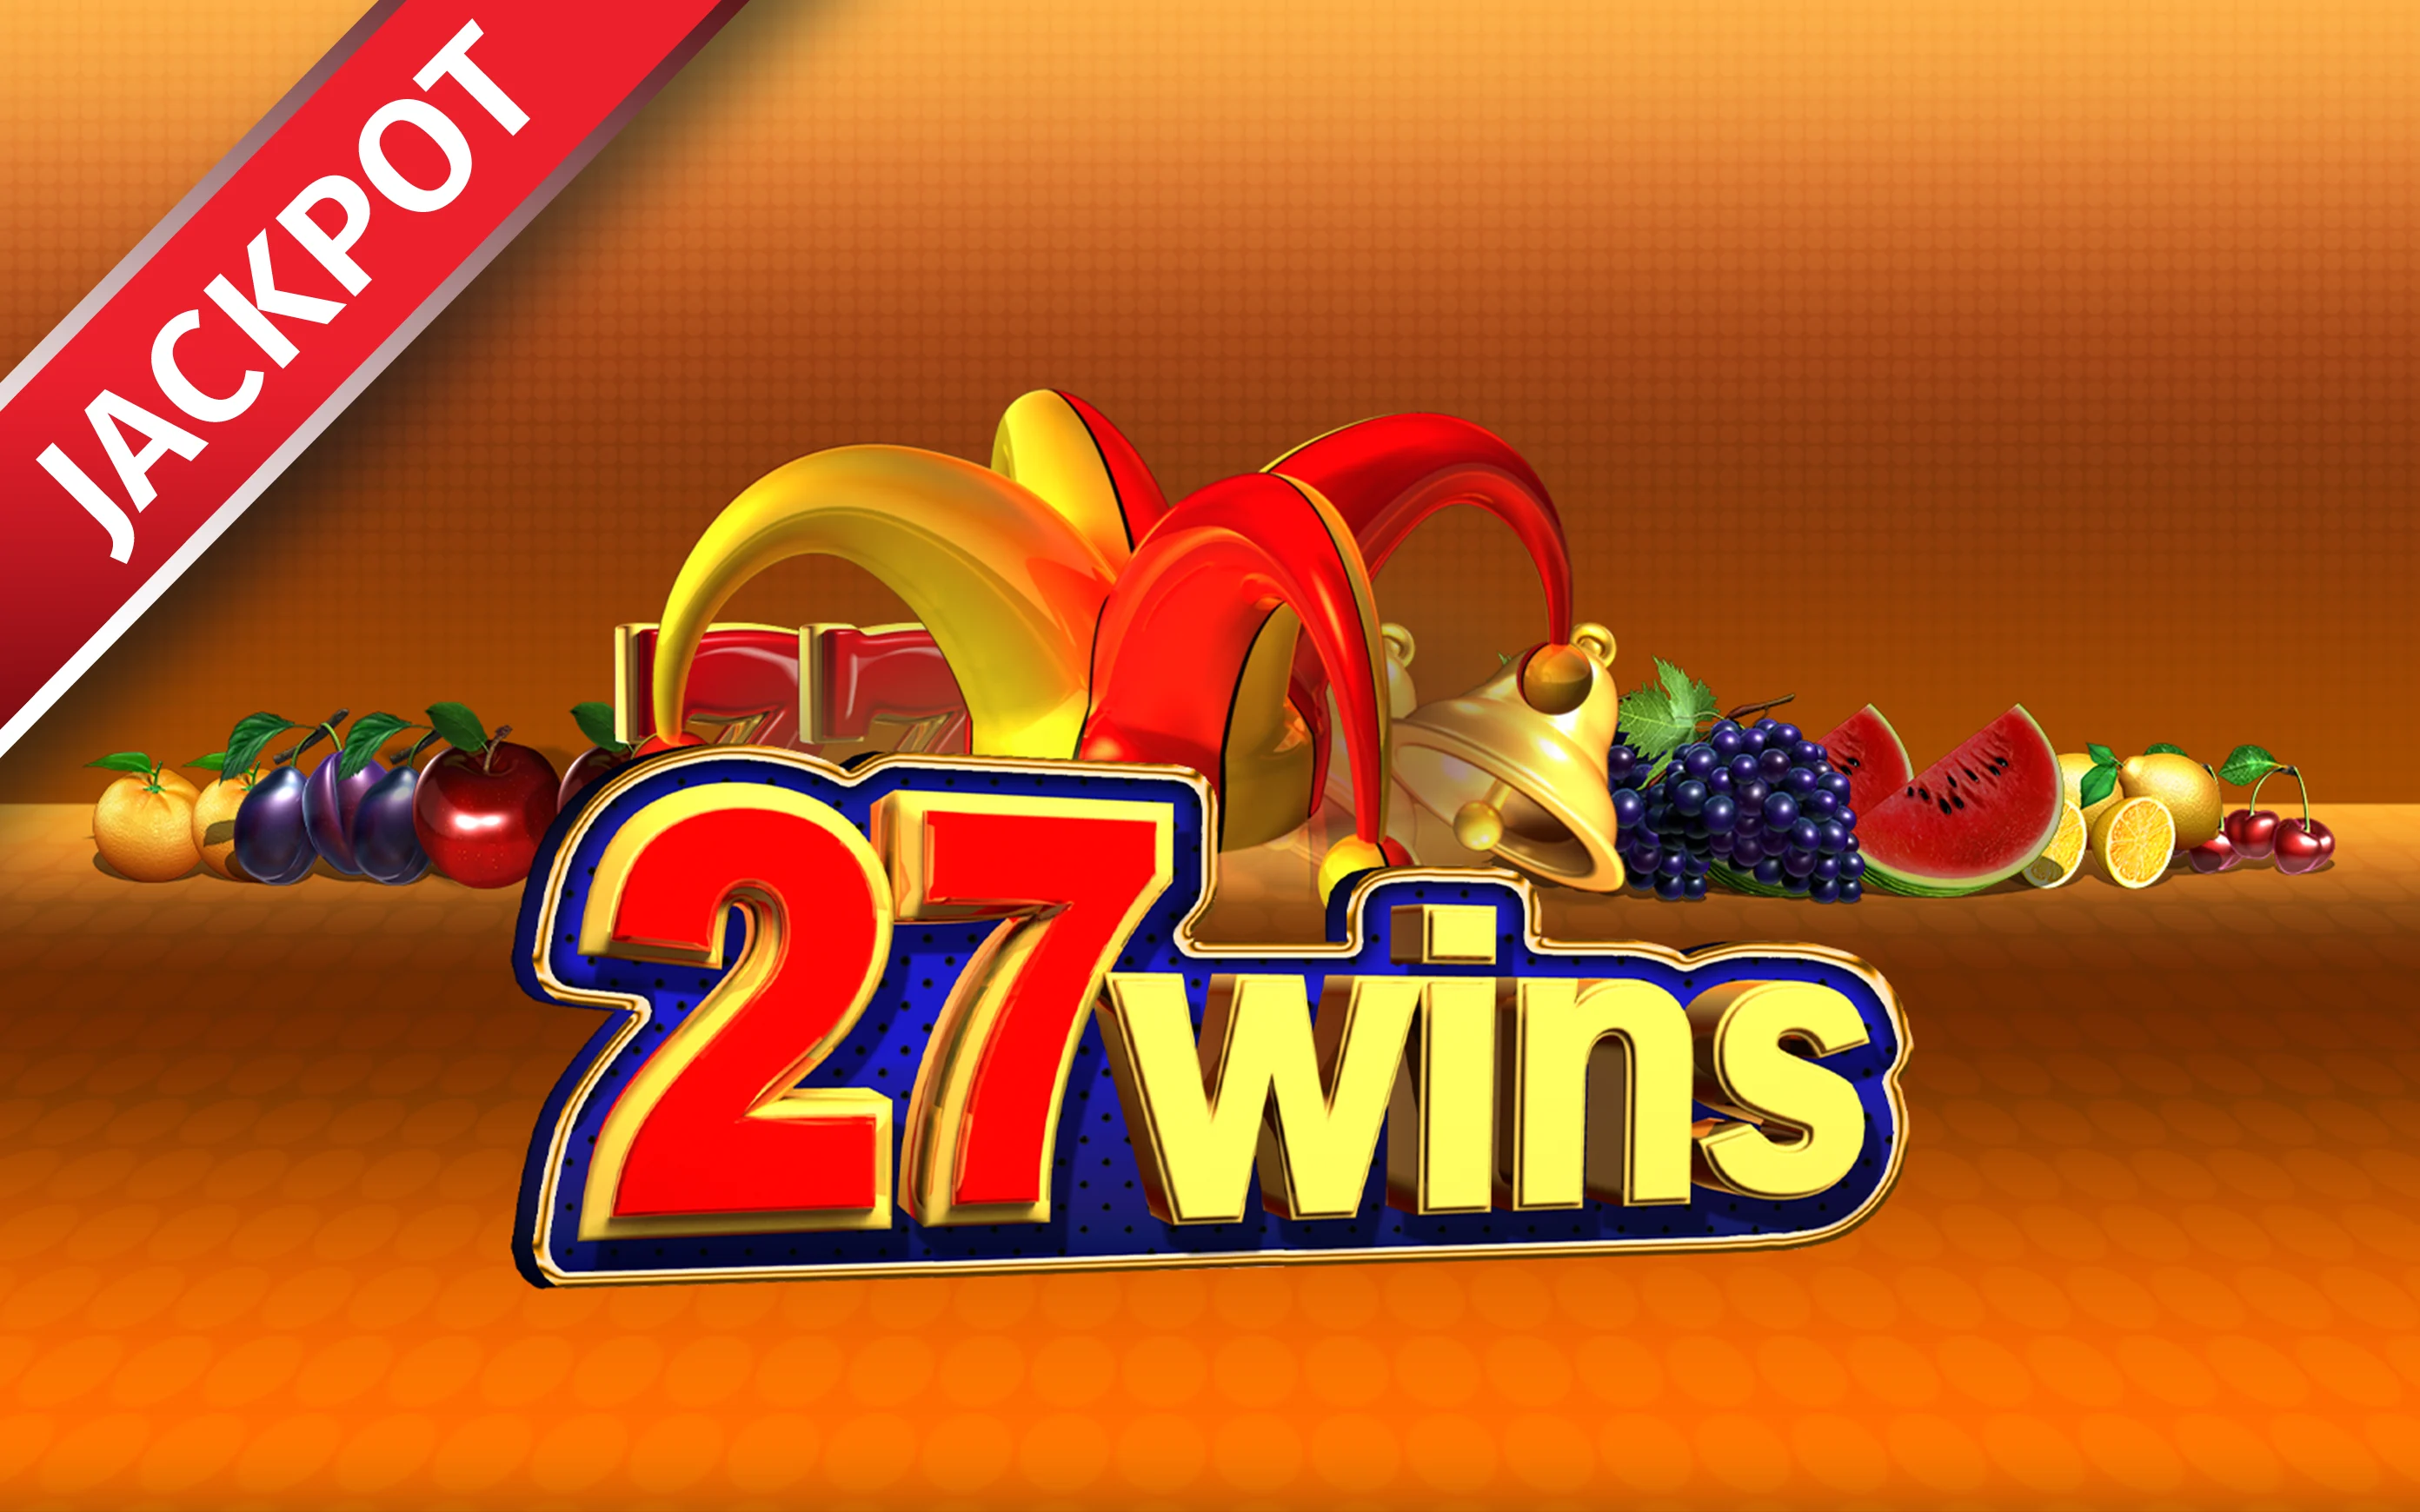 Play 27 Wins on Starcasino.be online casino